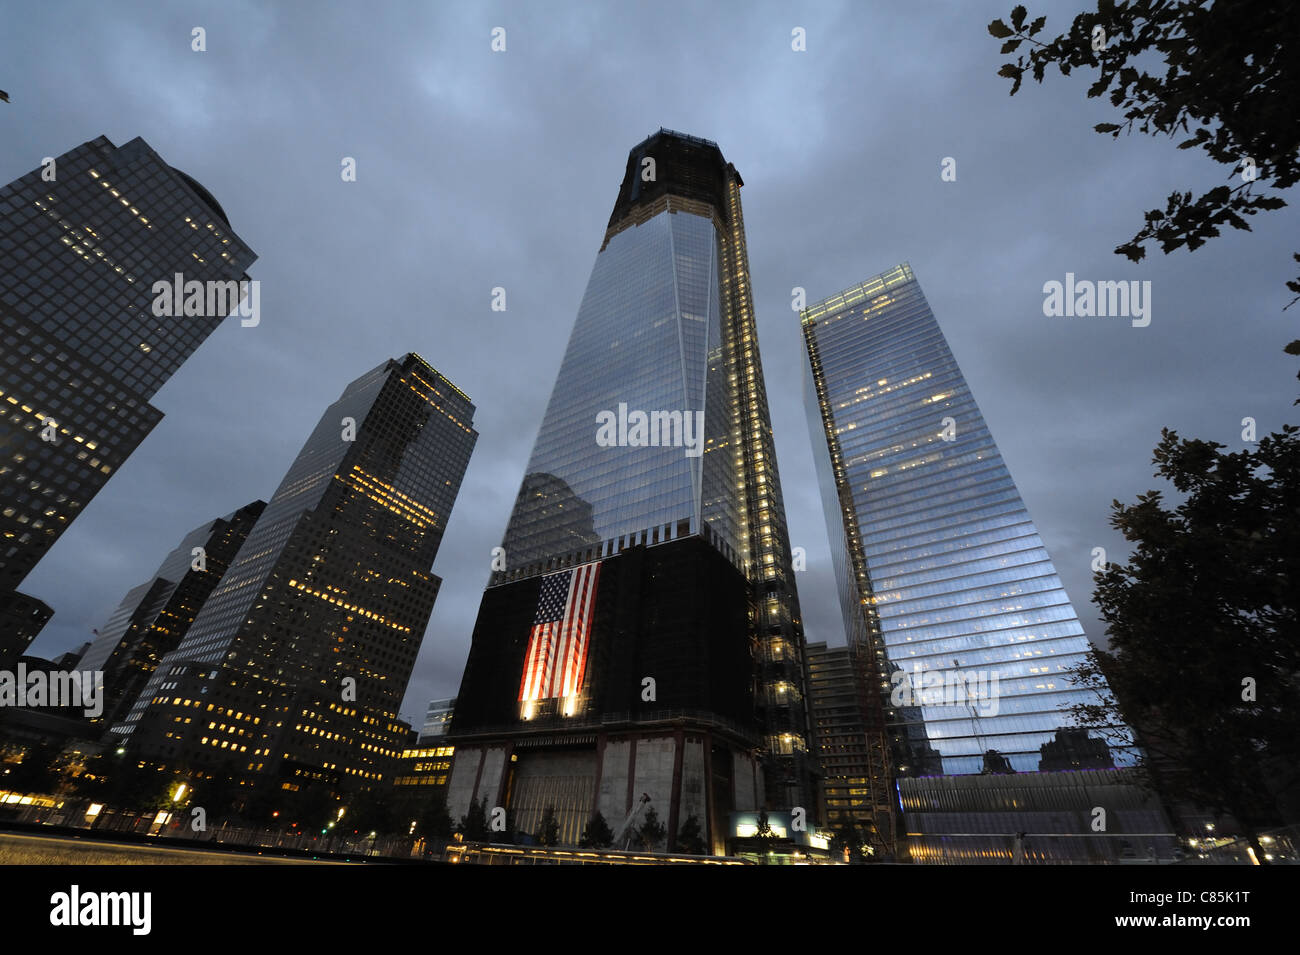 1 y 7 del World Trade Center World Trade Center en la noche como se ve desde la plaza de la National Memorial del 11 de septiembre. Foto de stock